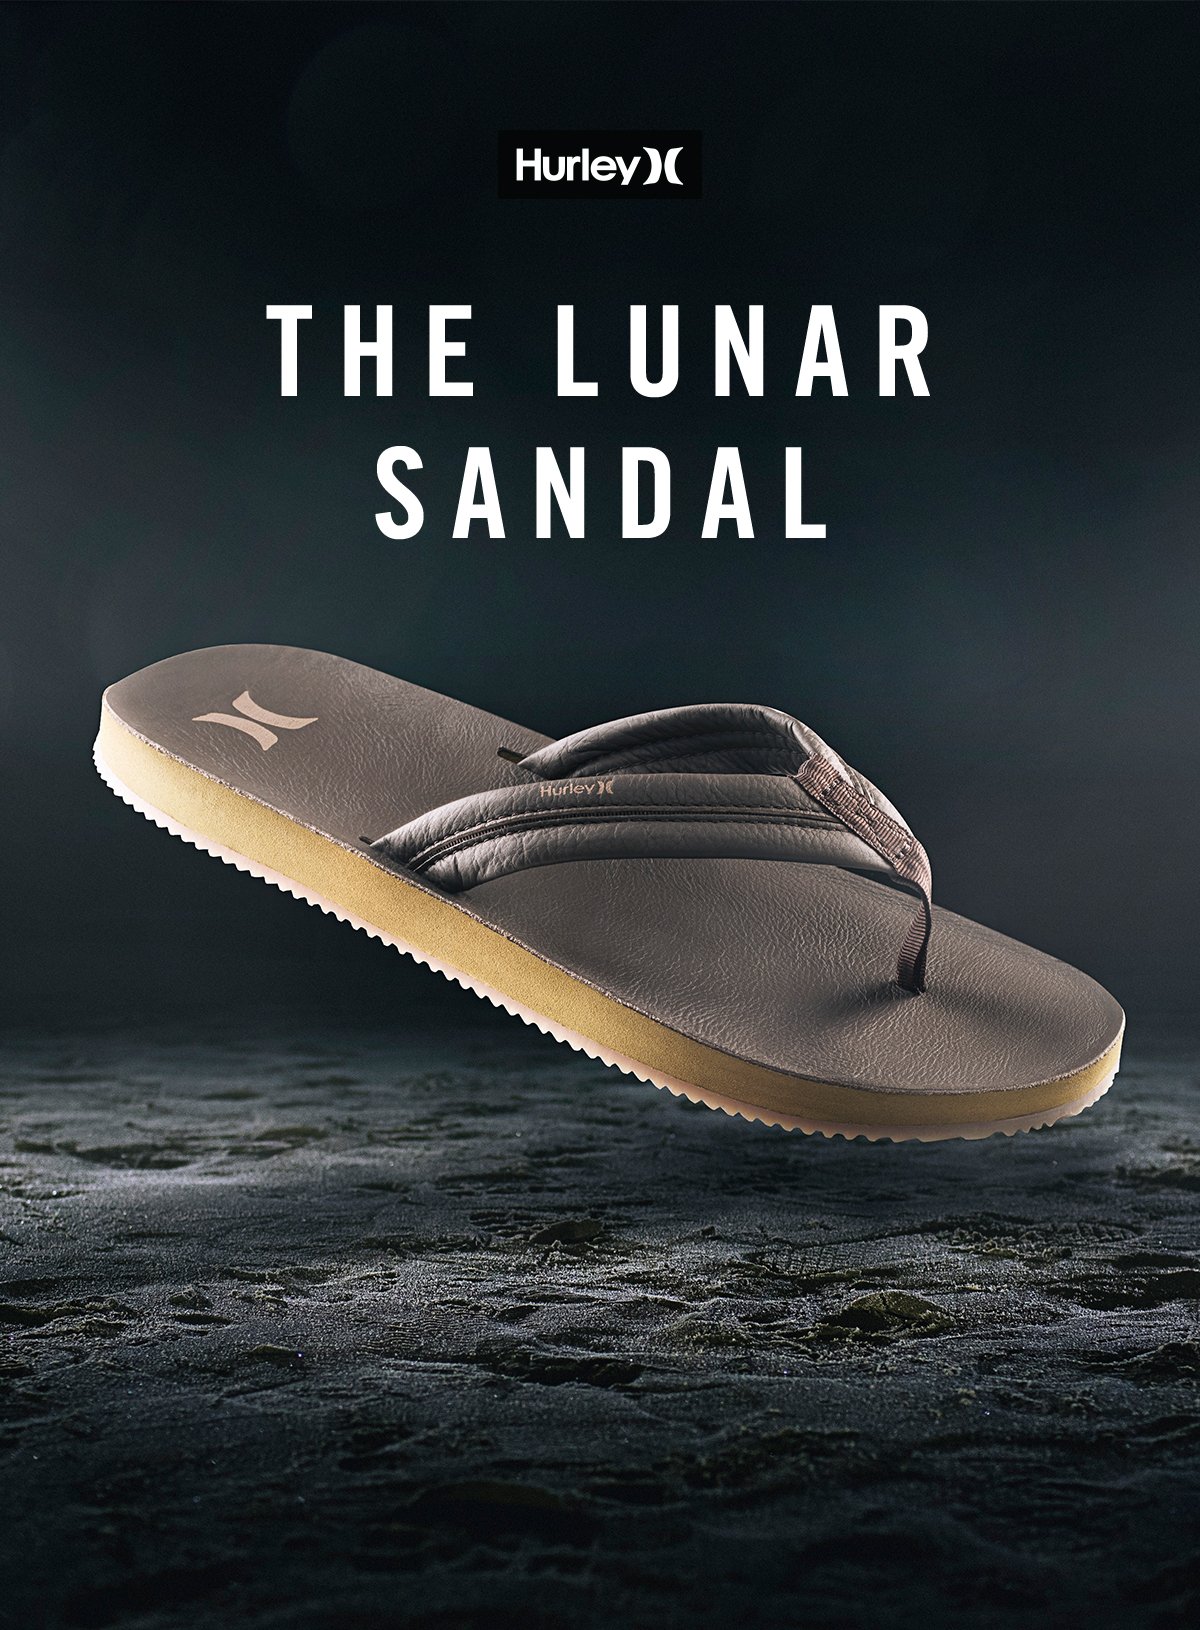 nike lunar sandals